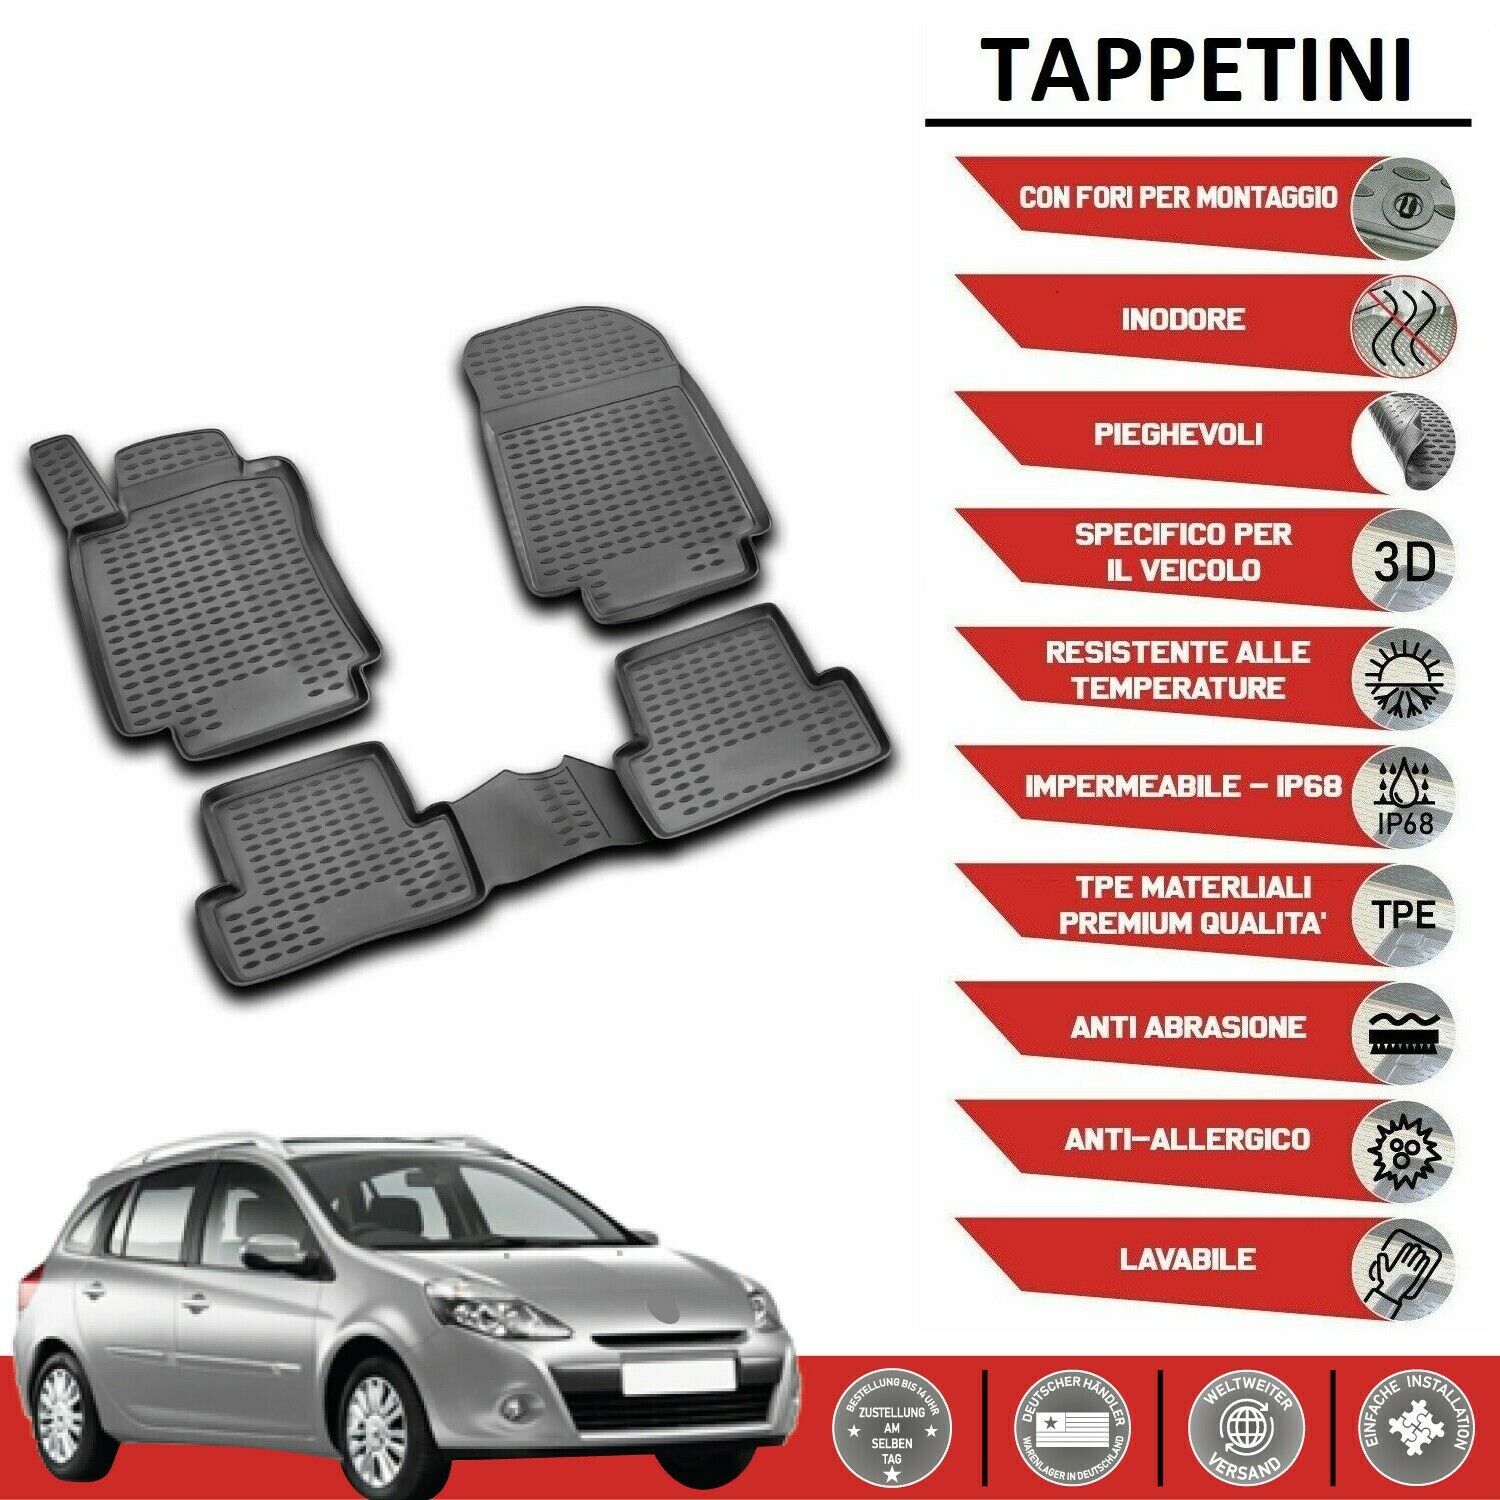 TAPPETINI RENAULT Clio - Accessori Auto In vendita a Napoli